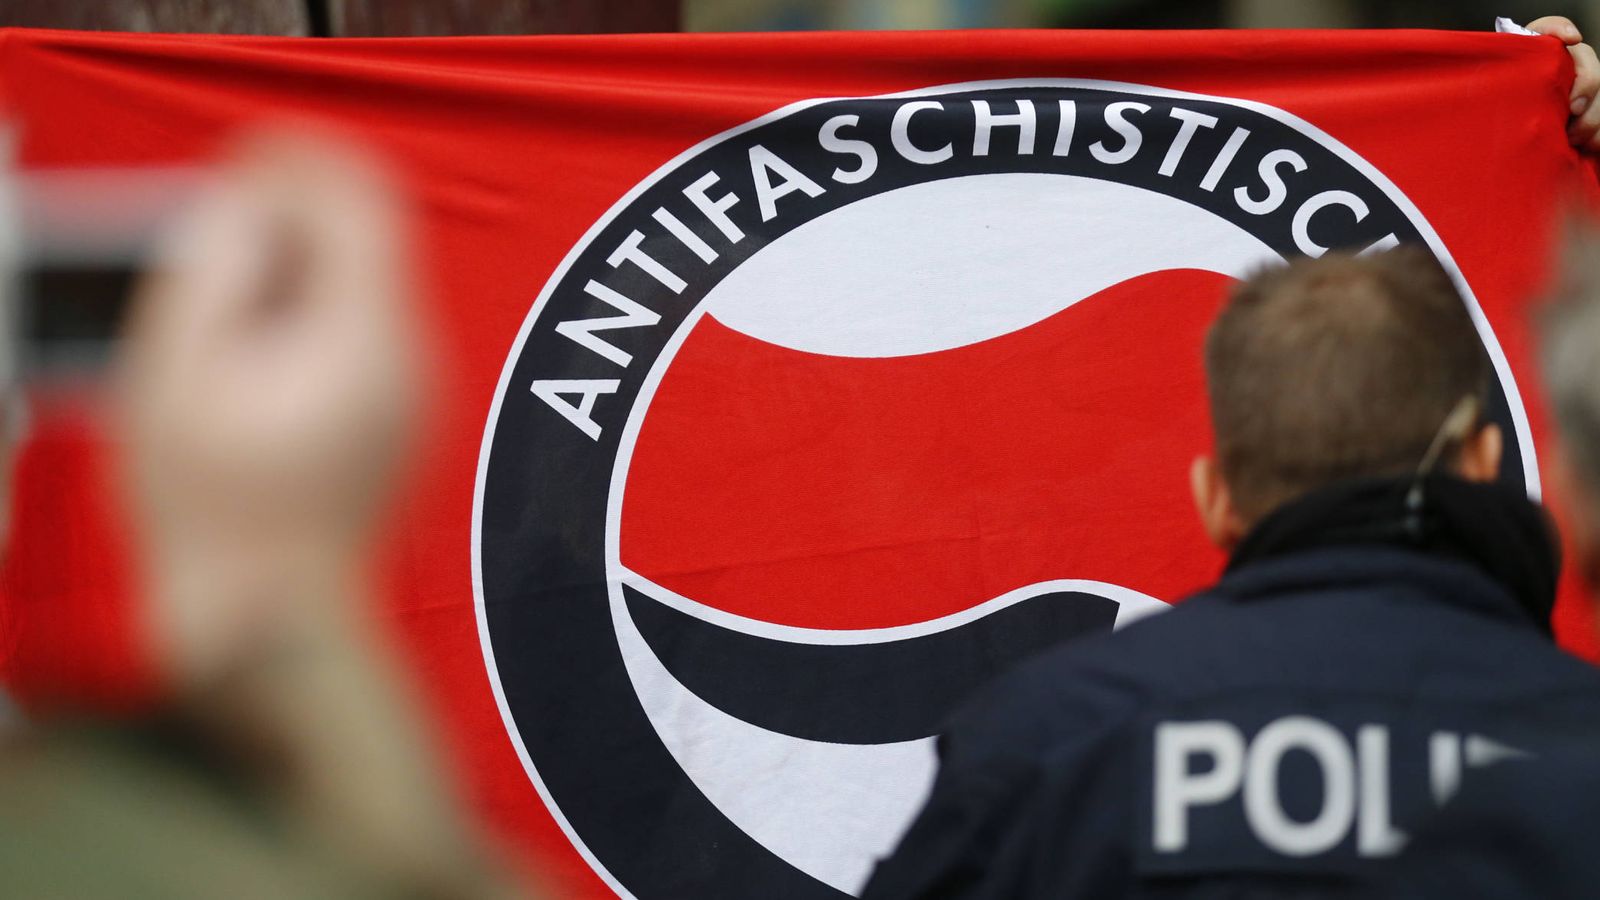 Foto: Militantes de Acción Antifascista, uno de los grupos 'antialemanes' de izquierdas, durante una manifestación a favor de inmigrantes y refugiados en Berlín, en noviembre de 2015 (Reuters)